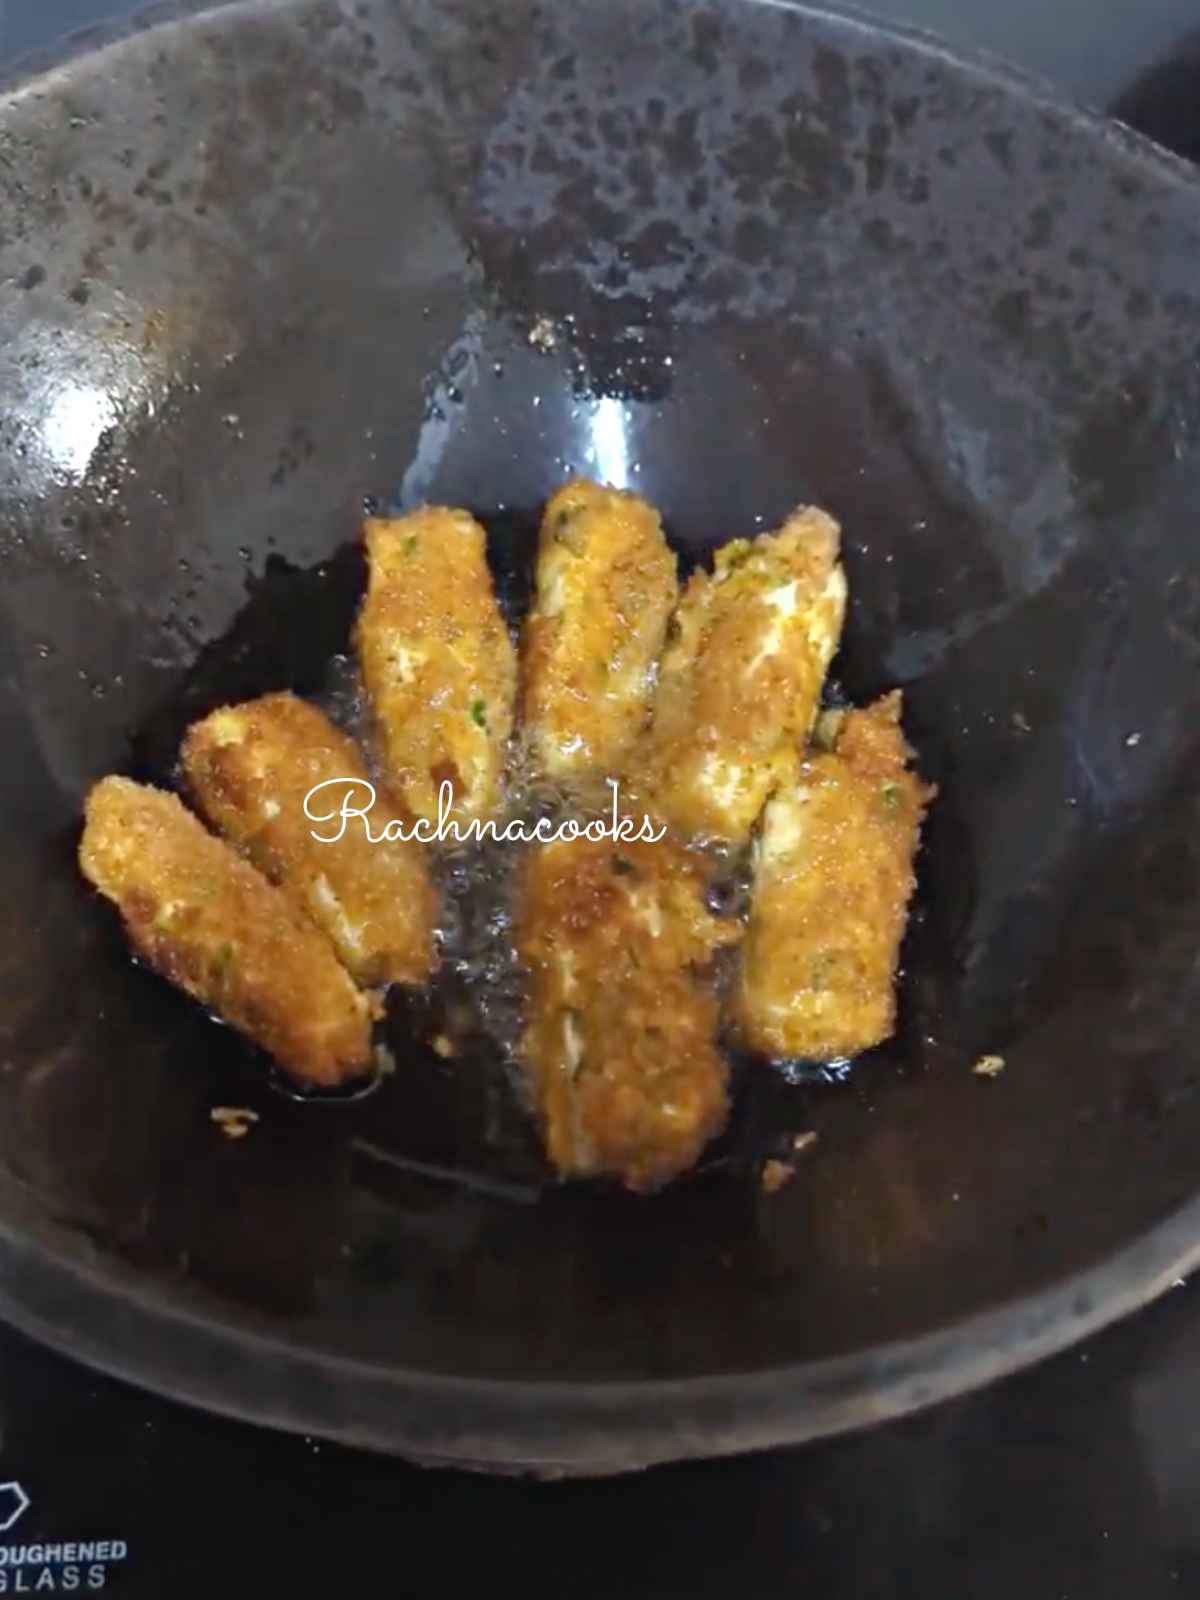 paneer fingers being deep fried in oil in a wok.